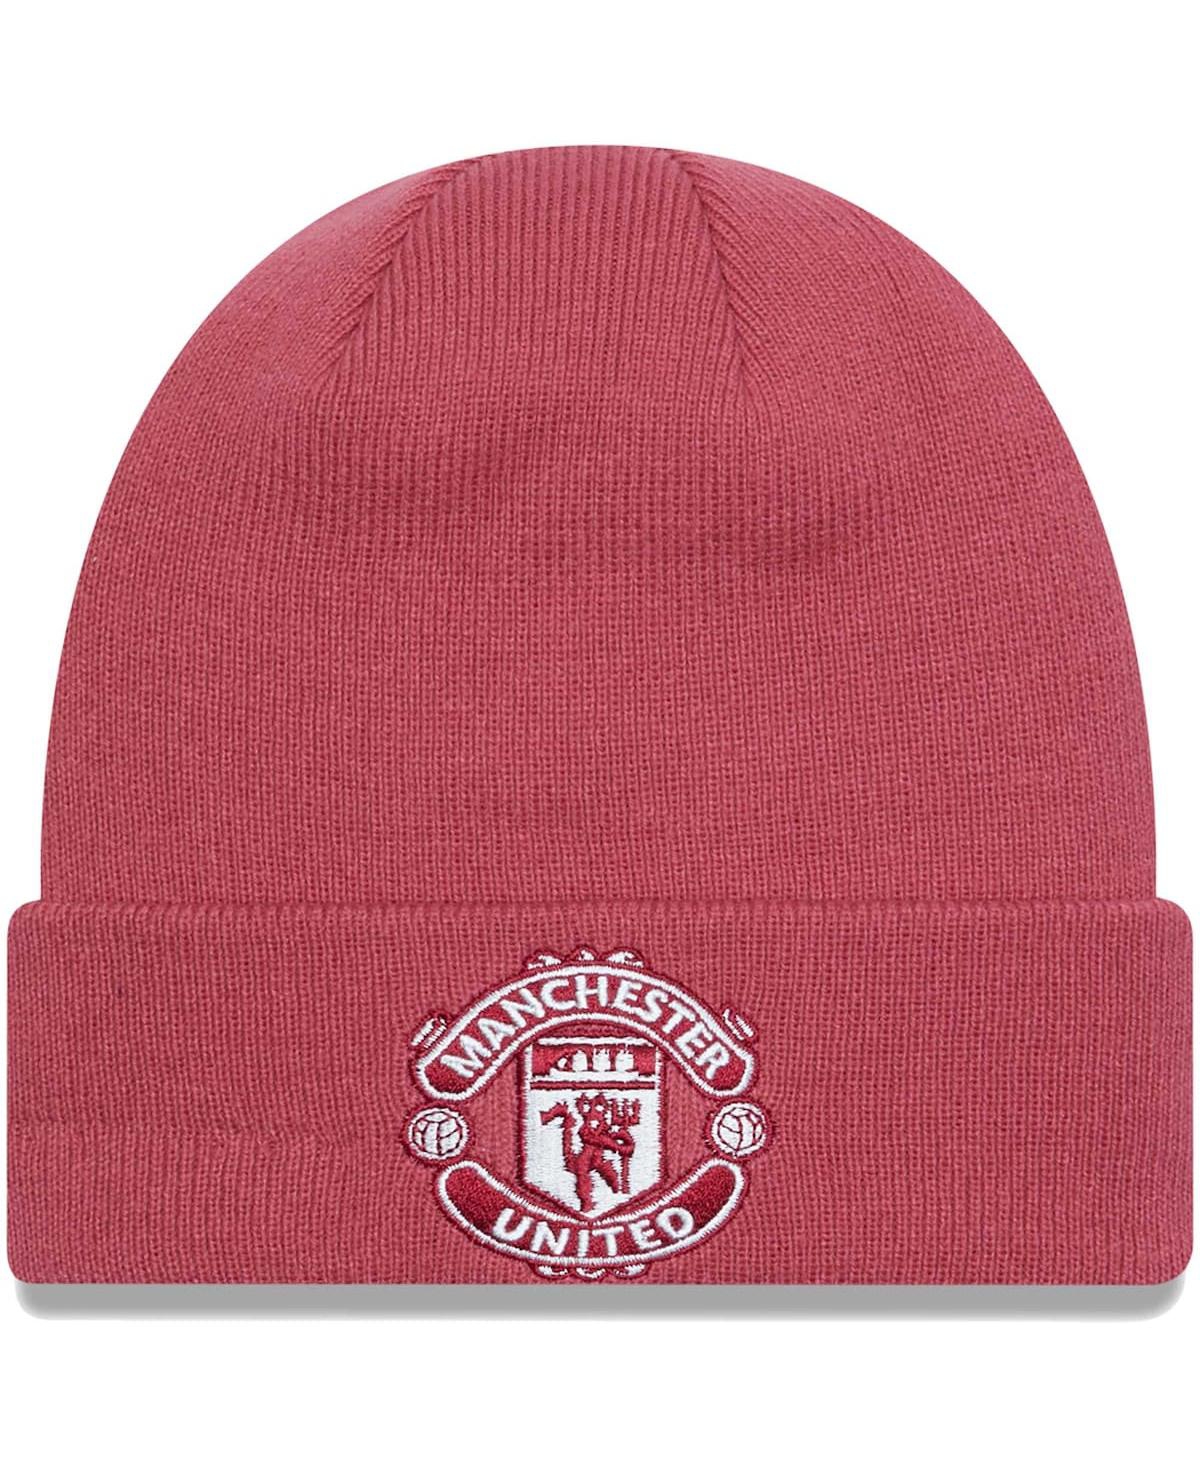 New Era Men's  Pink Manchester United Seasonal Cuffed Knit Hat